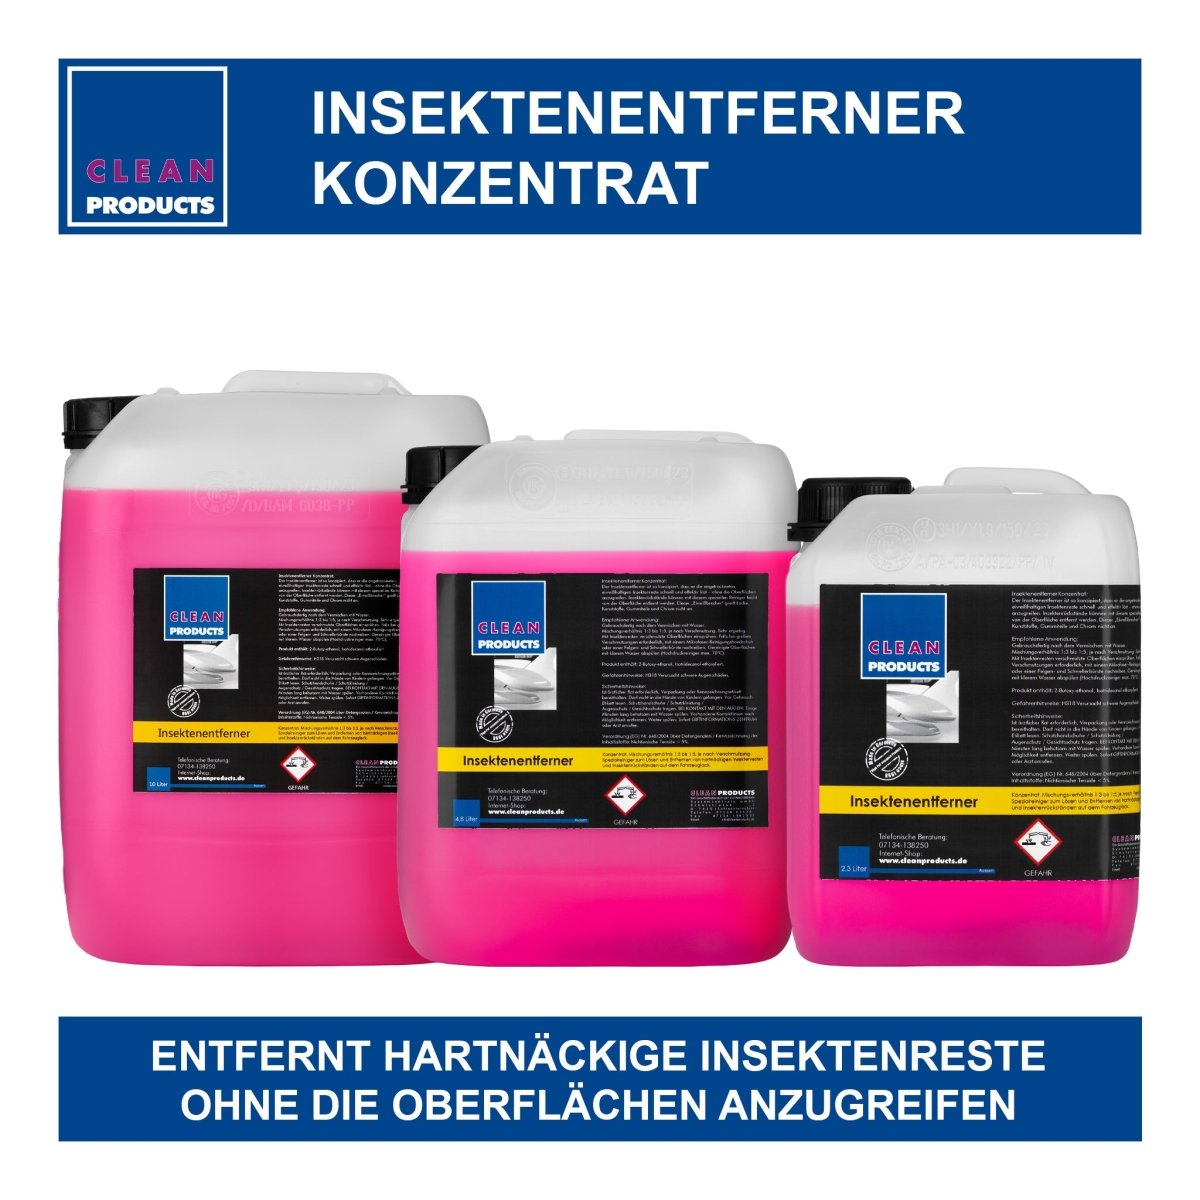 Insektenentferner Konzentrat (Insektenreiniger) - 4,8 Liter - CLEANPRODUCTS